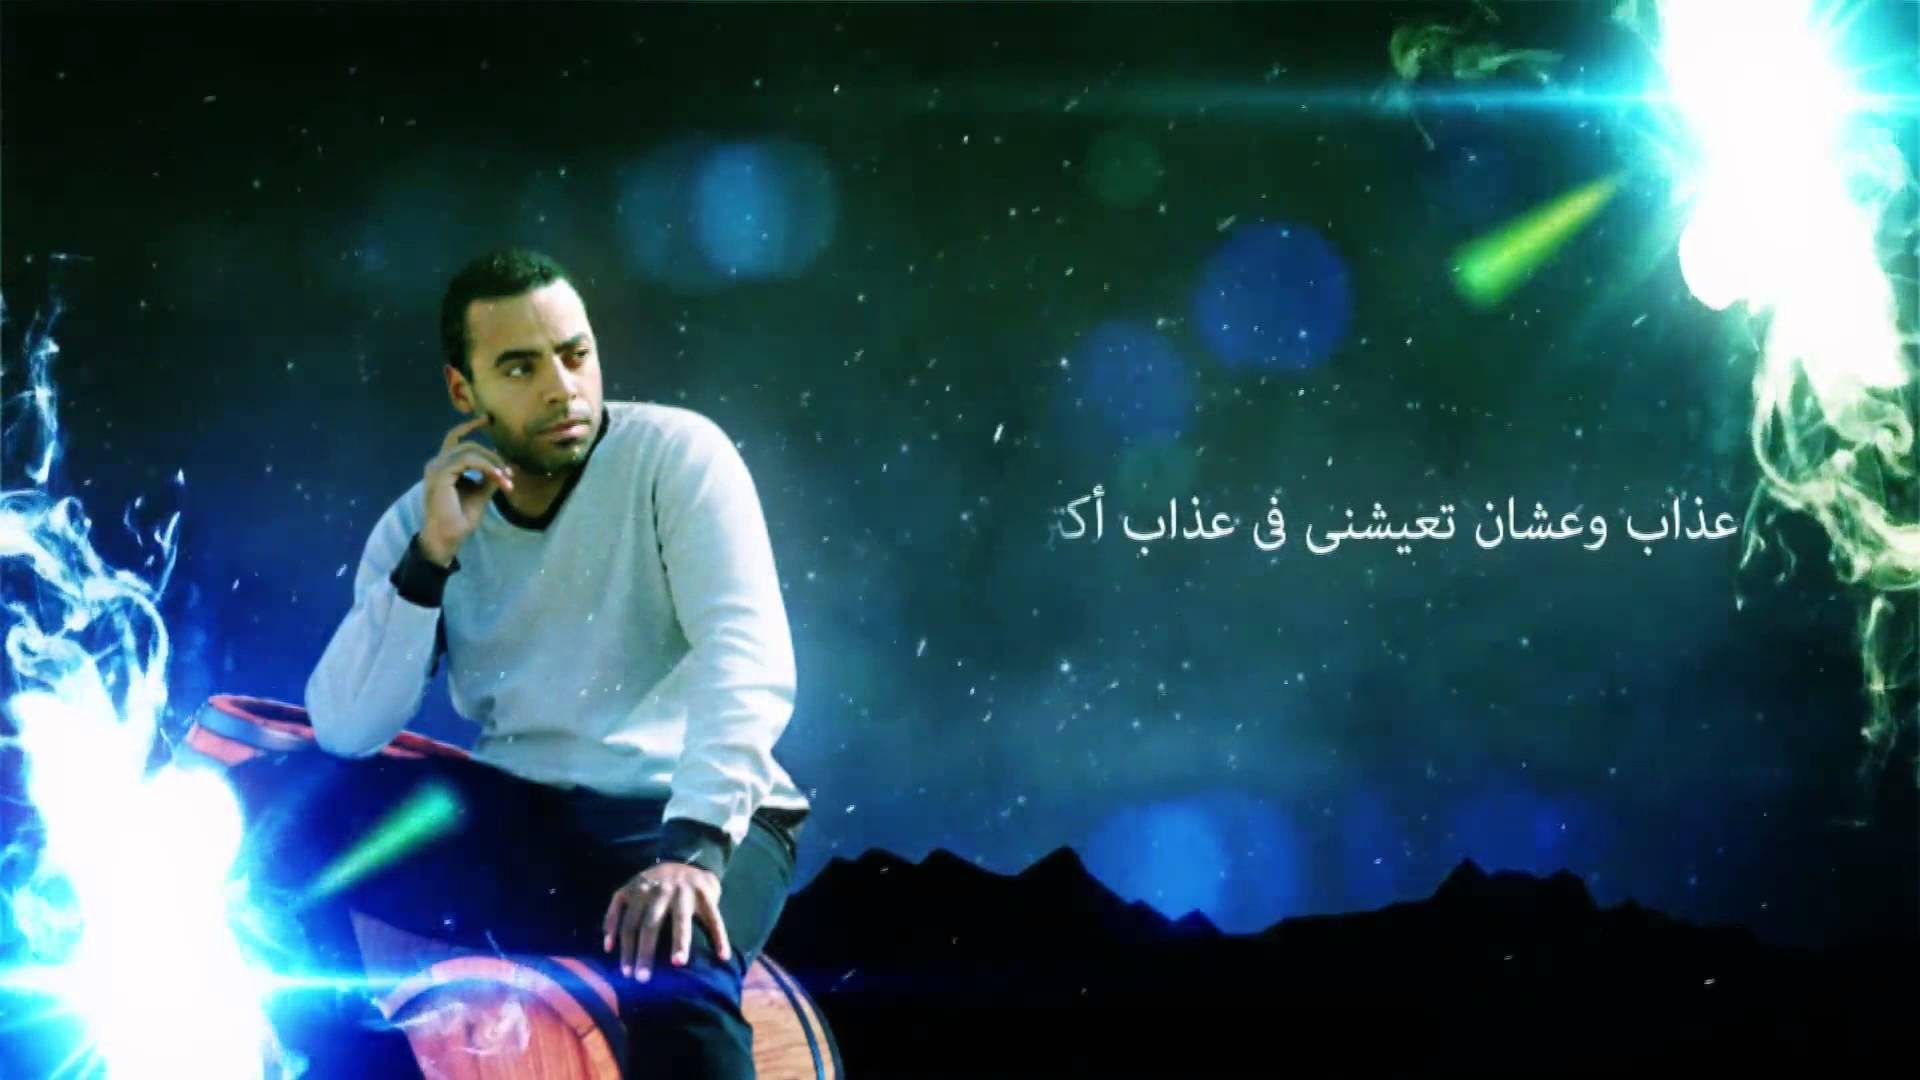 يوتيوب مشاهدة كليب عايز رأيى محمد كمال 2014 كامل hd مزيكا